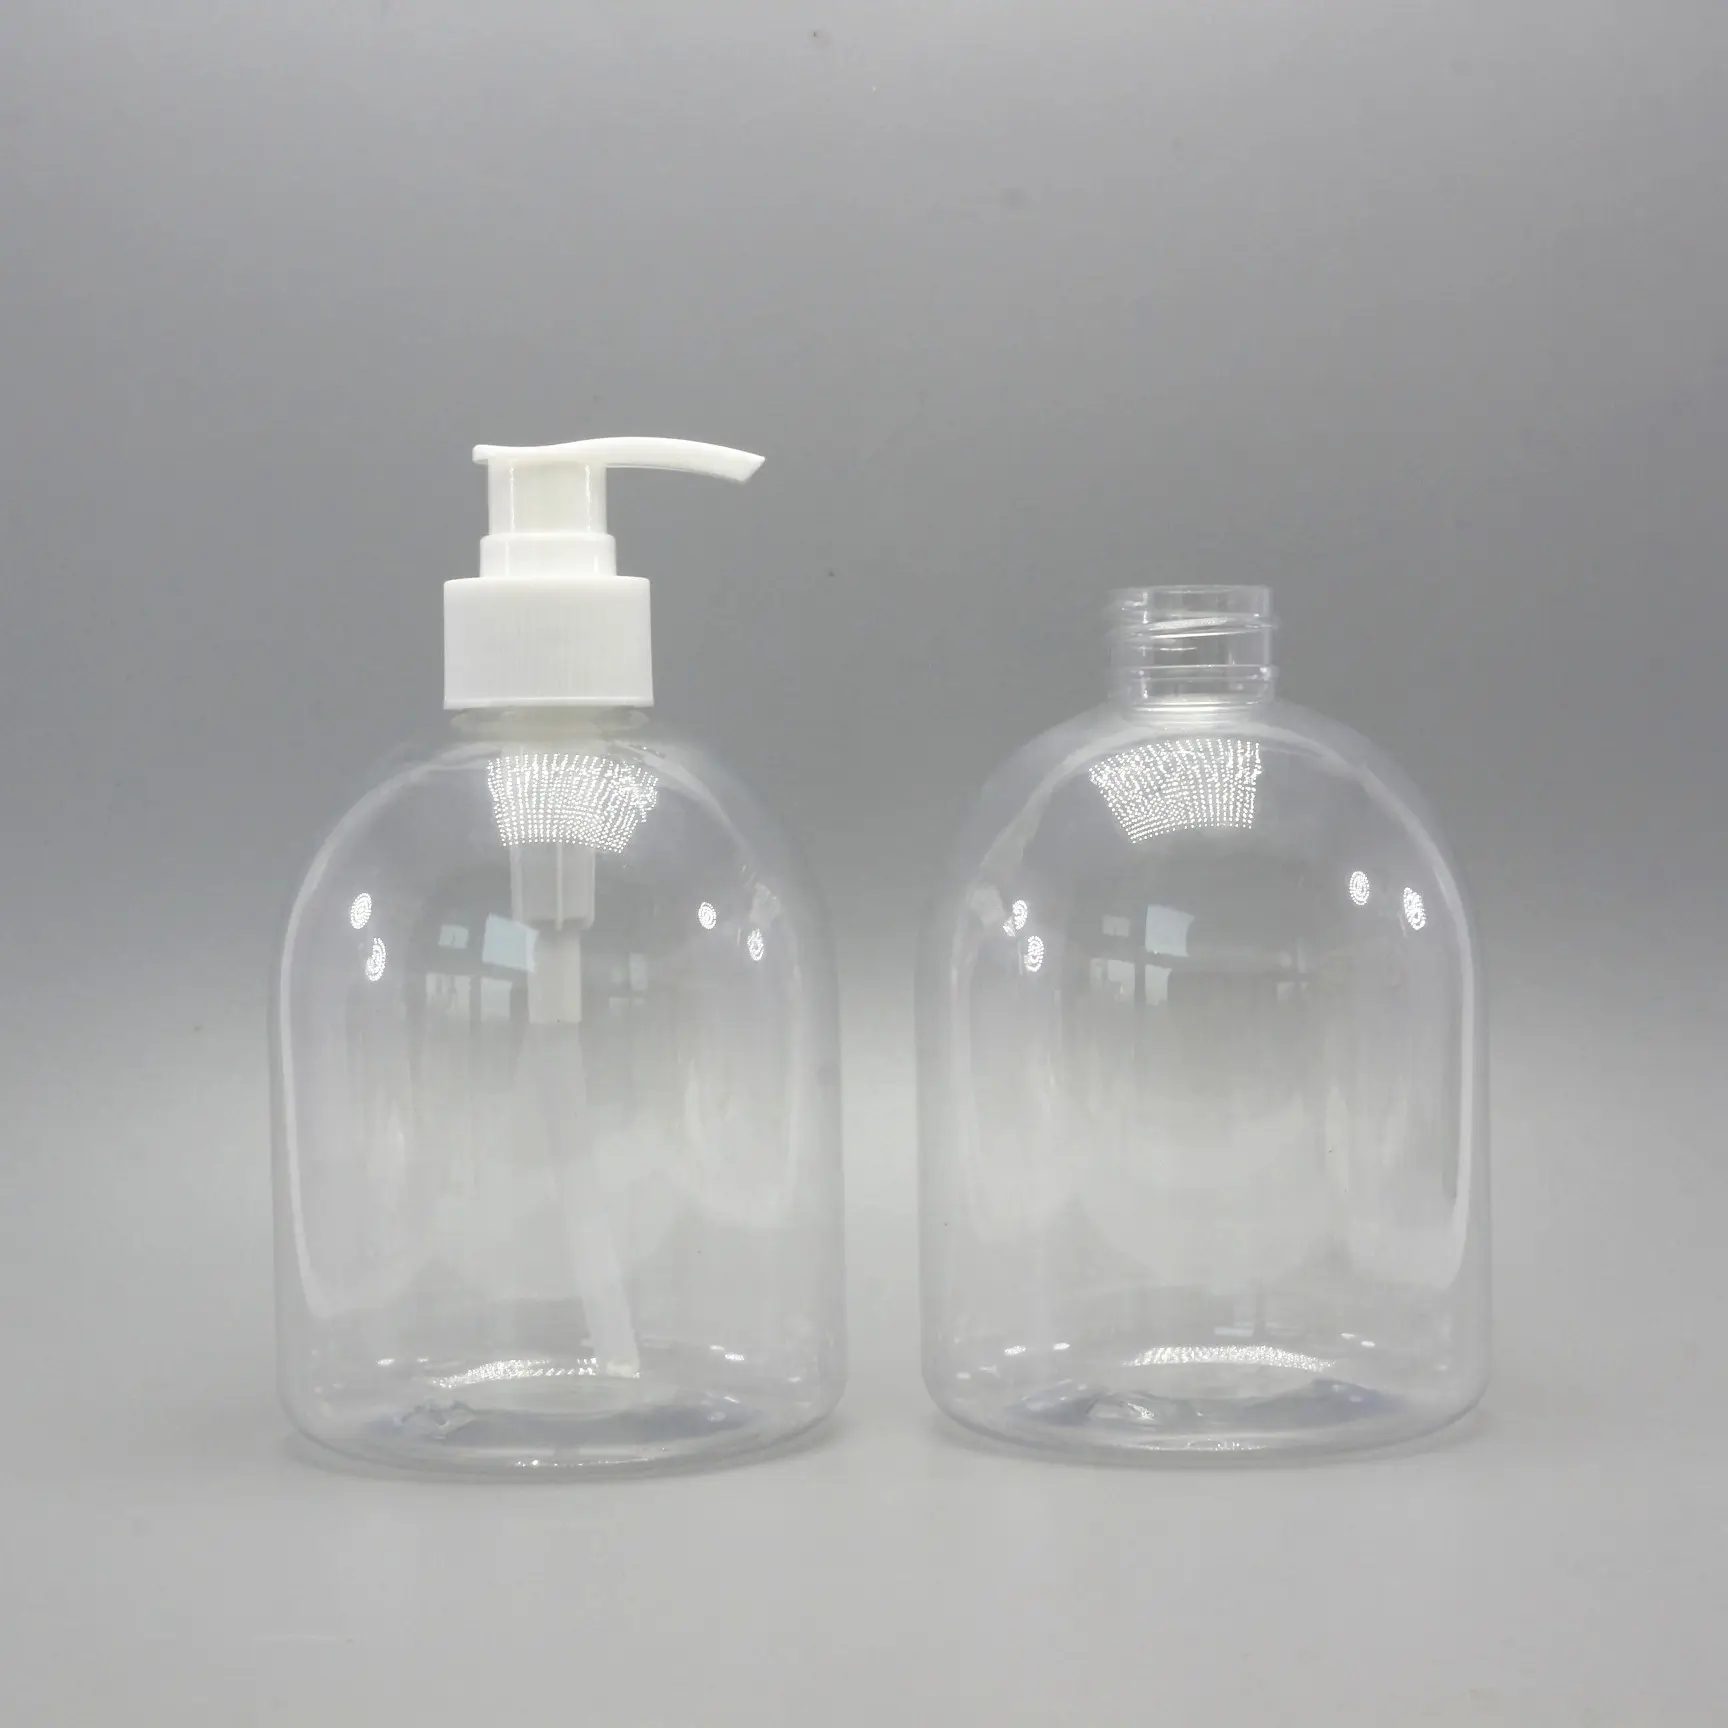 Dispensador de bomba plástica de 500ml, garrafas de plástico para lavagem das mãos, frasco de sabão líquido, garrafa de desinfetante de mão vazio PB-AN64